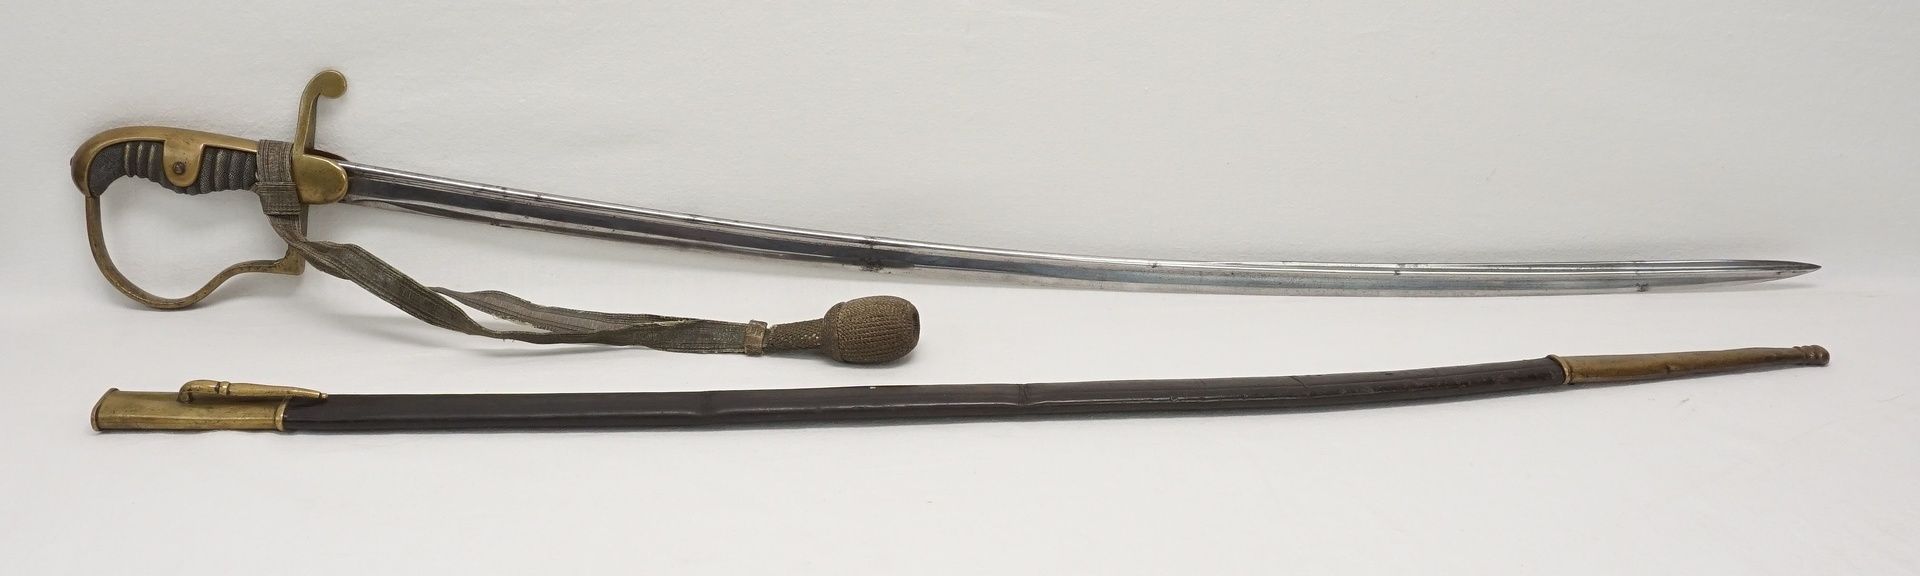 Preußischer Säbel mit Schör, um 1880ohne Hersteller, Stahl und Messing, blanke Klinge, - Bild 4 aus 4